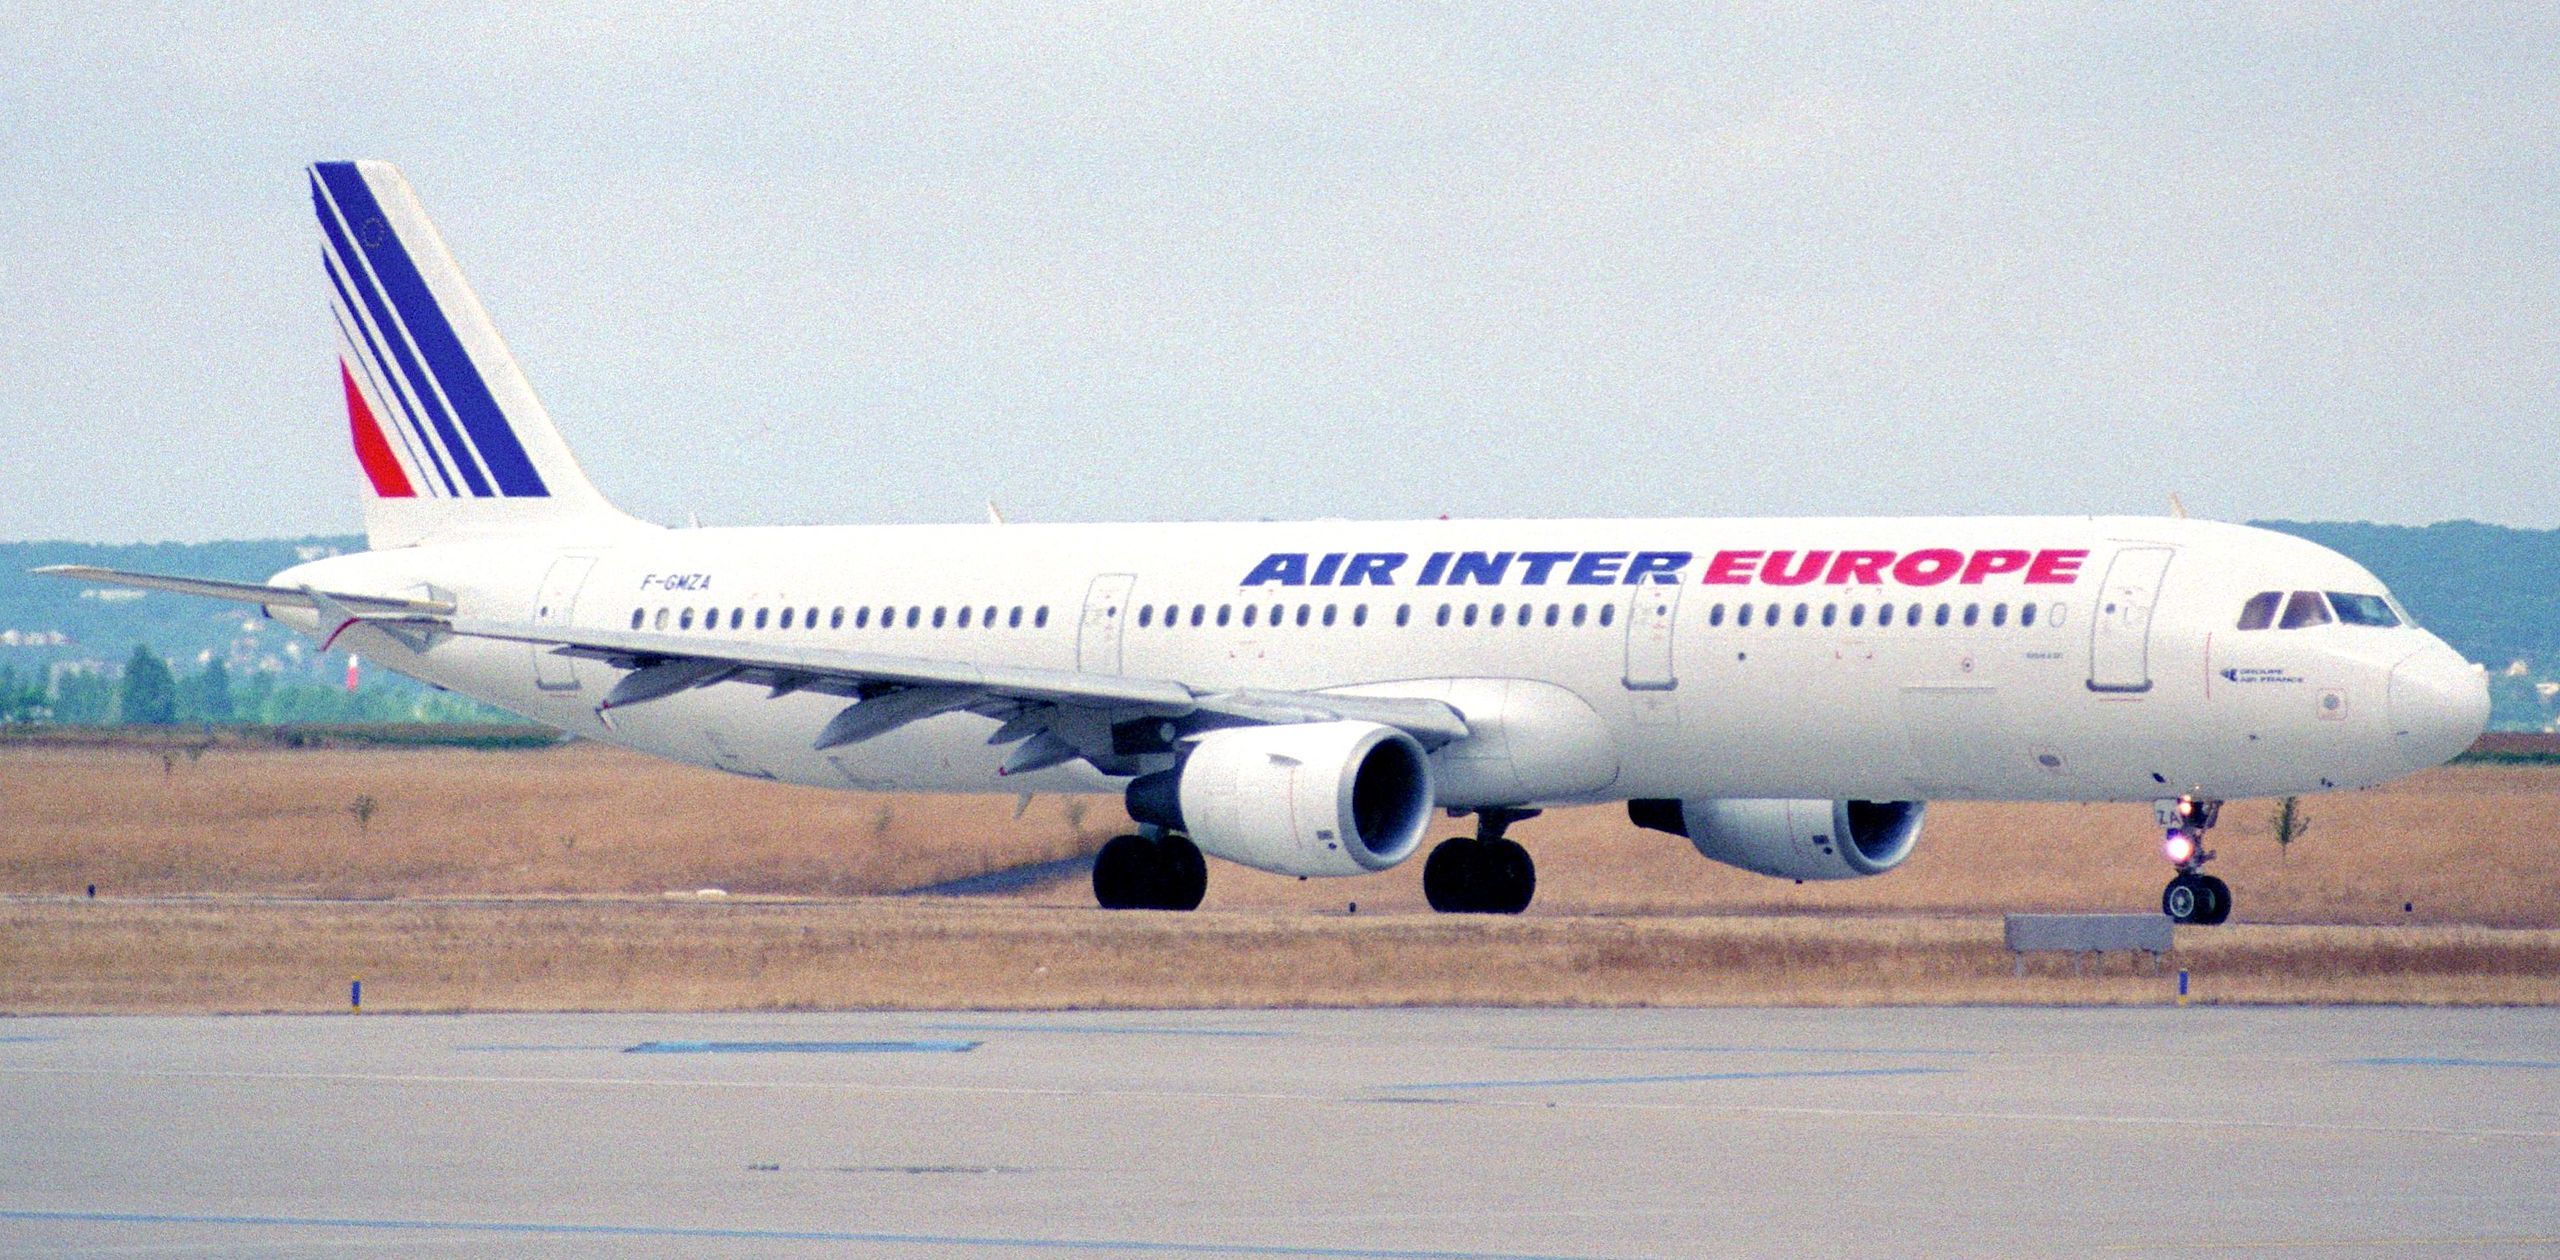 Air Inter Europe Airbus A321